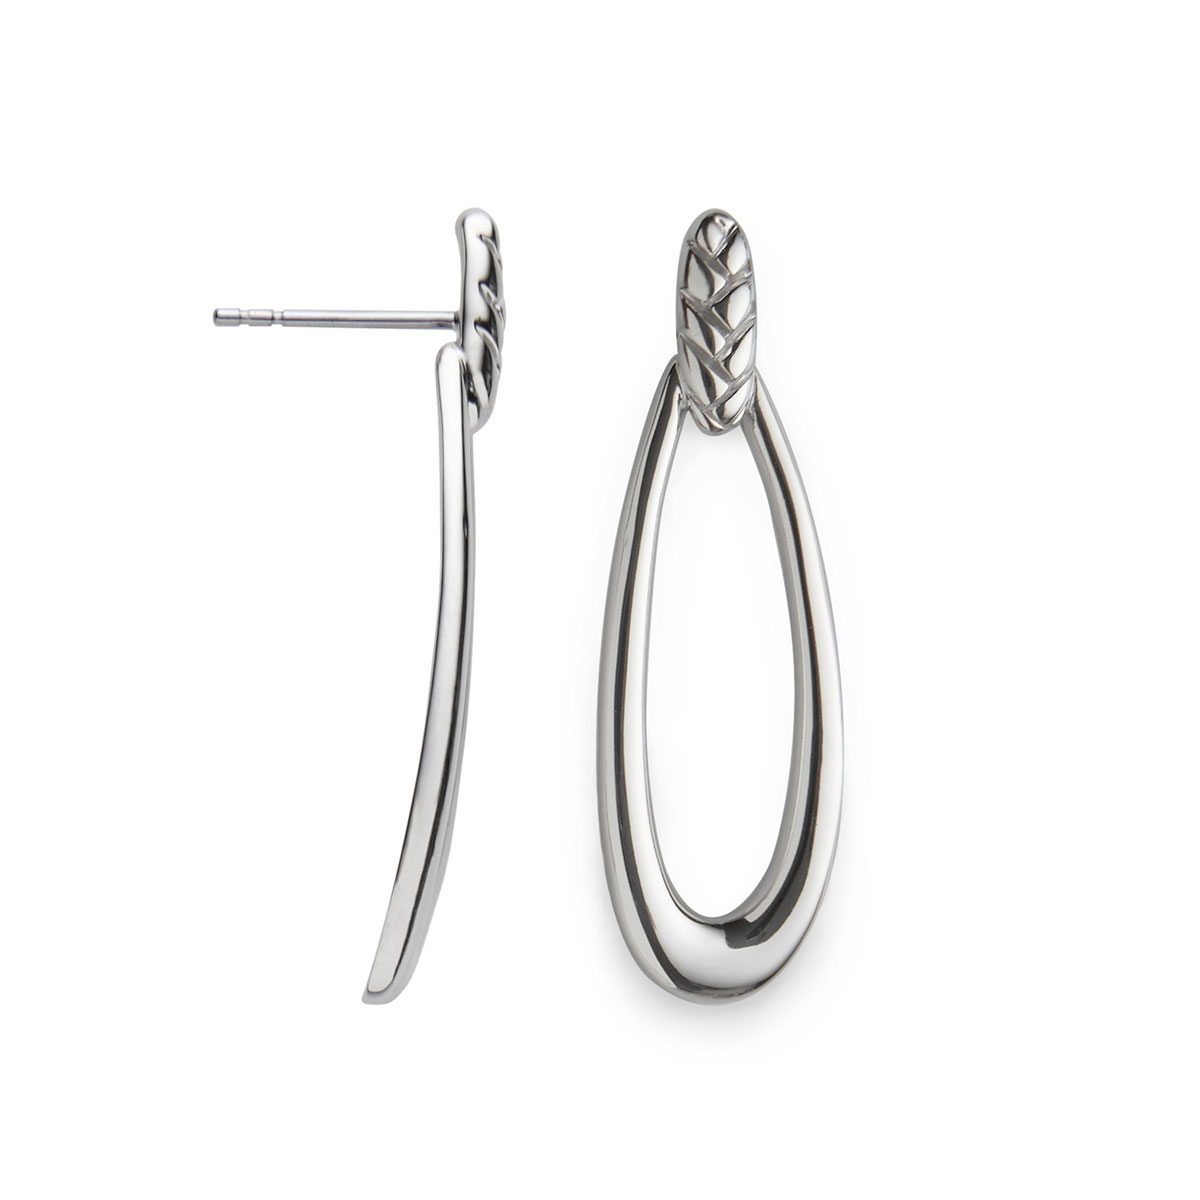 Nambe Jewelry Silver Braid Loop Earrings, Pair